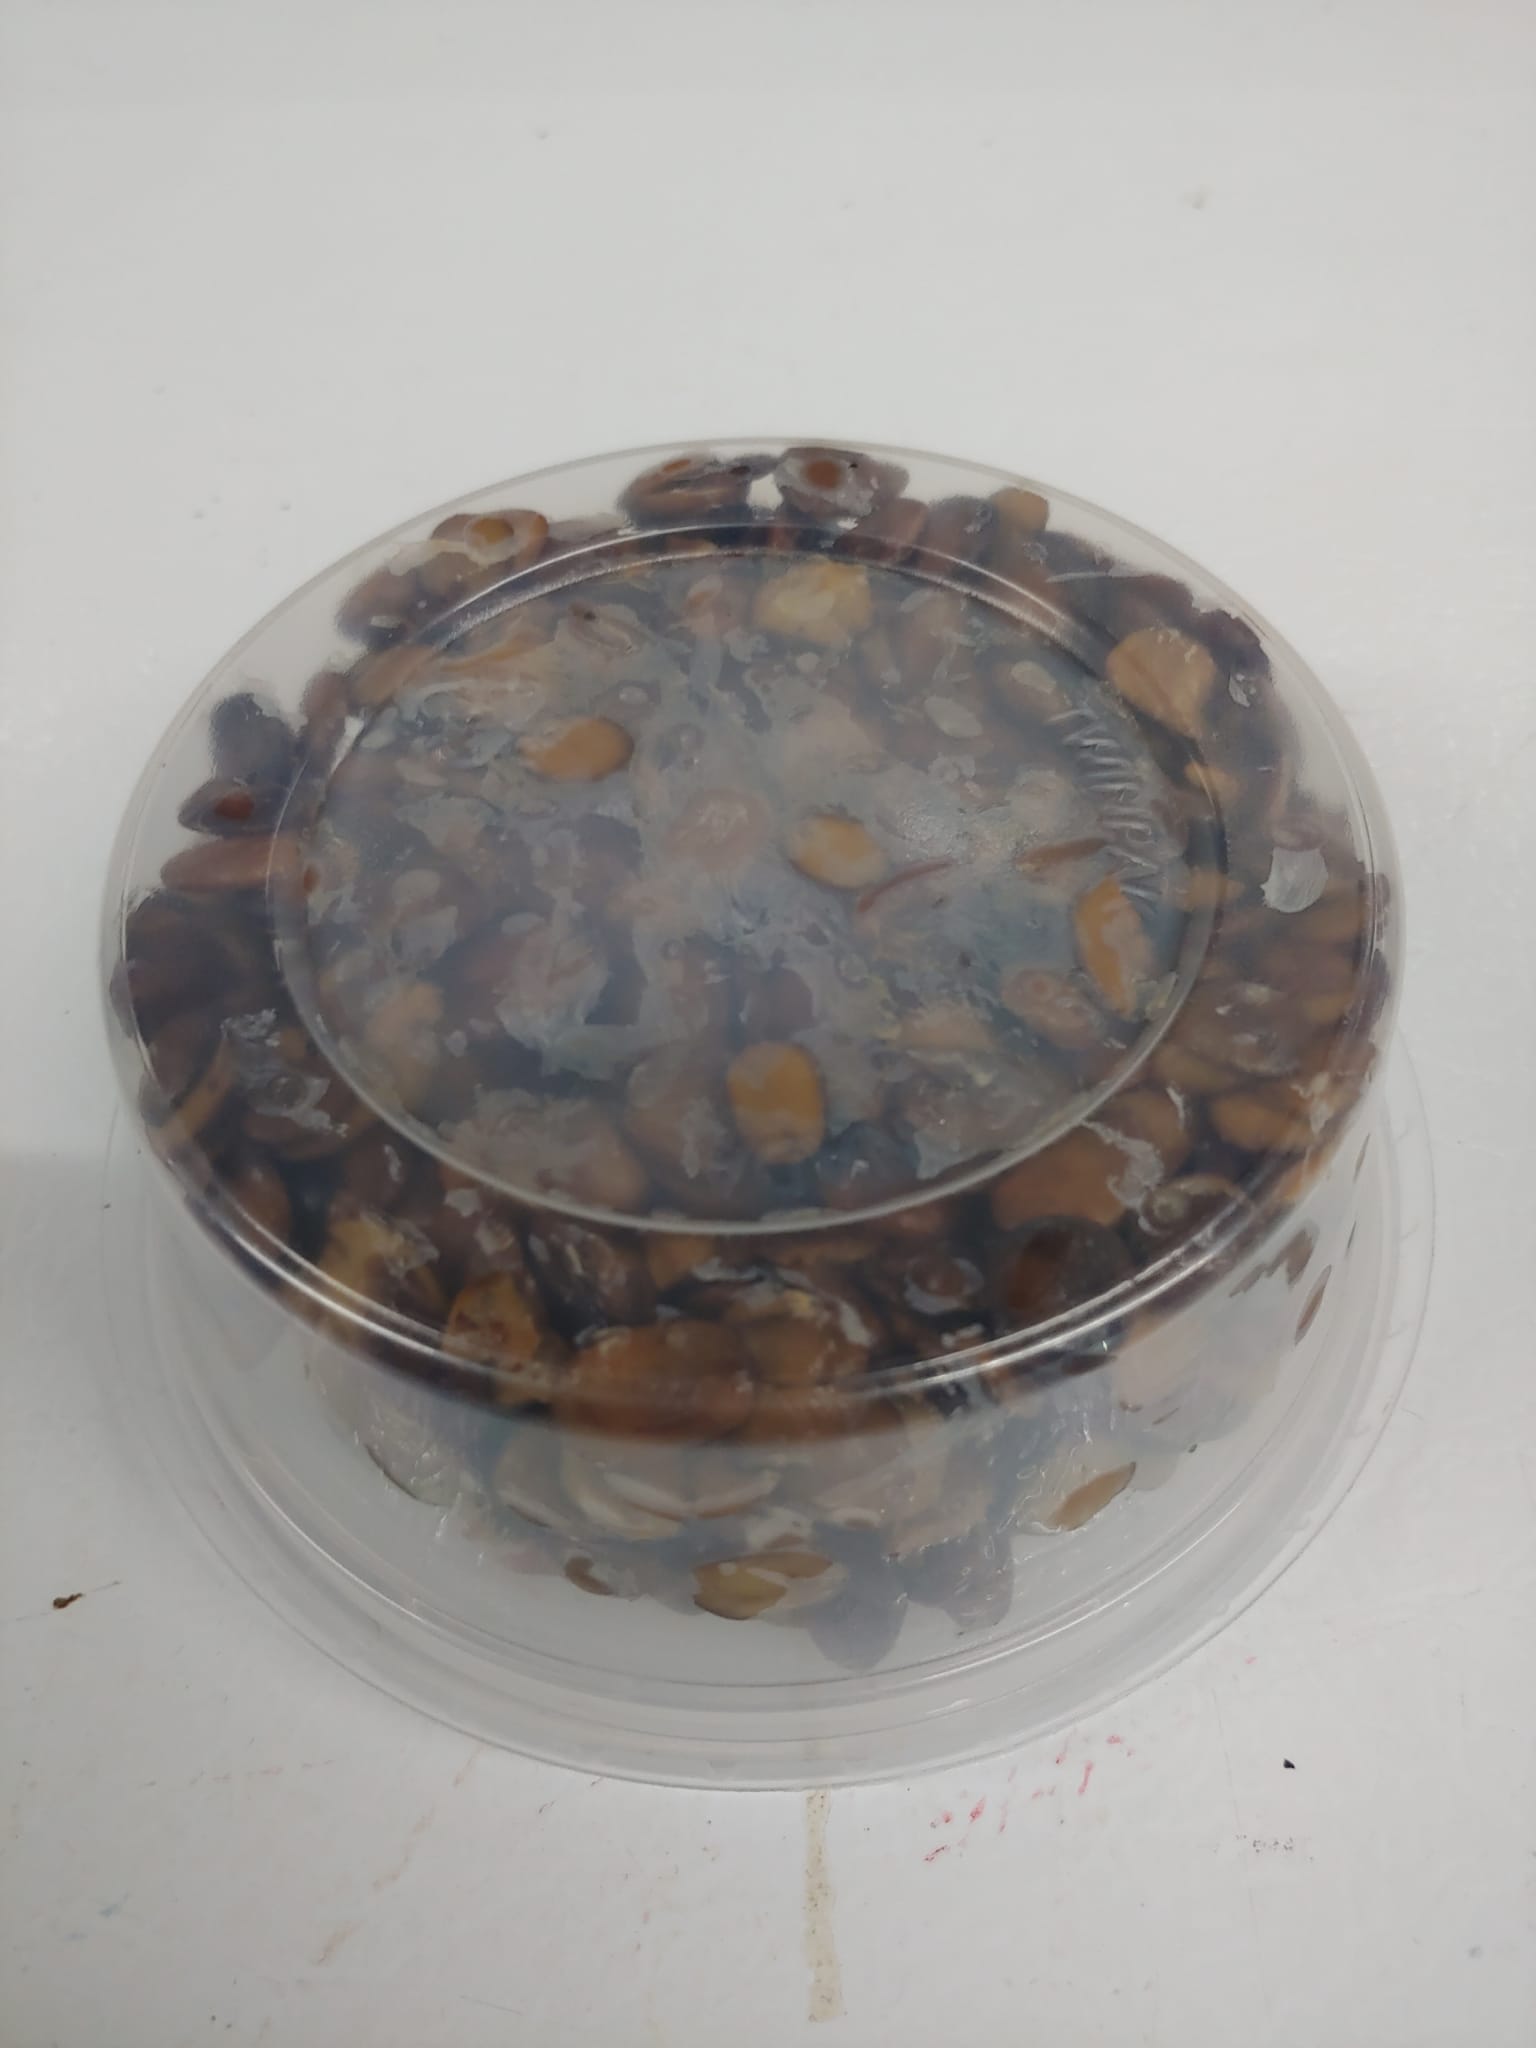 Locust Beans (Iru)